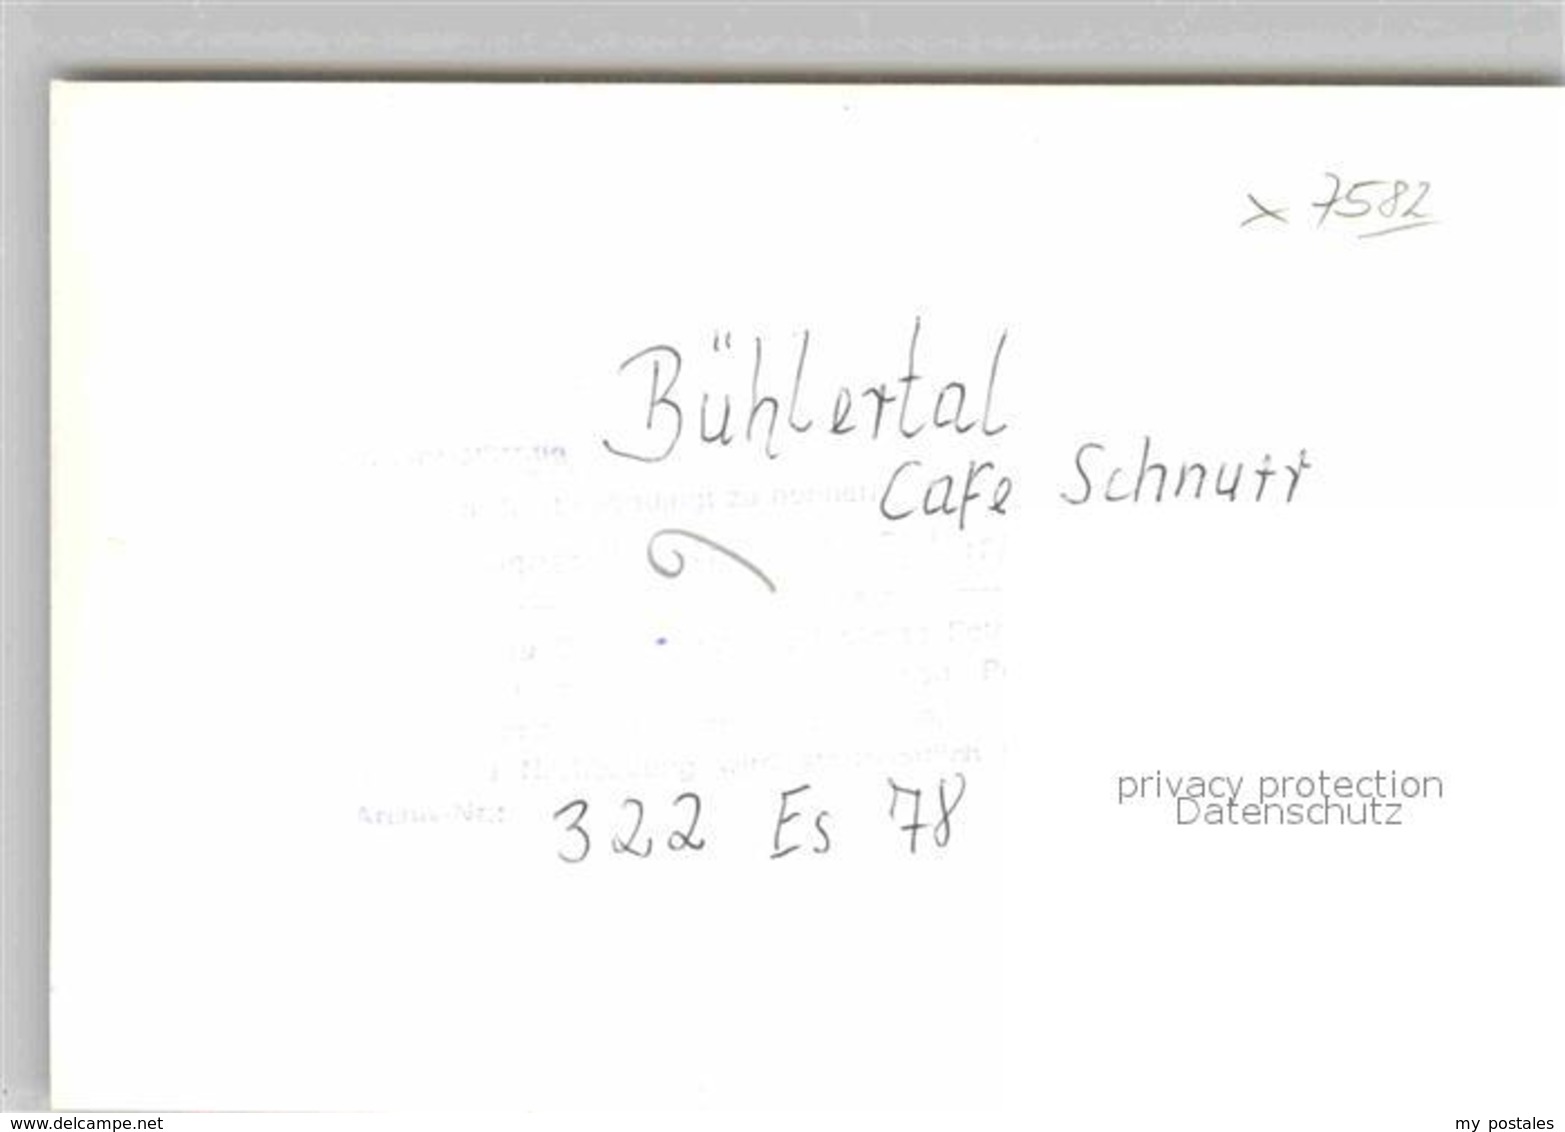 42854124 Buehlertal Cafe Schnurr Buehlertal - Buehlertal